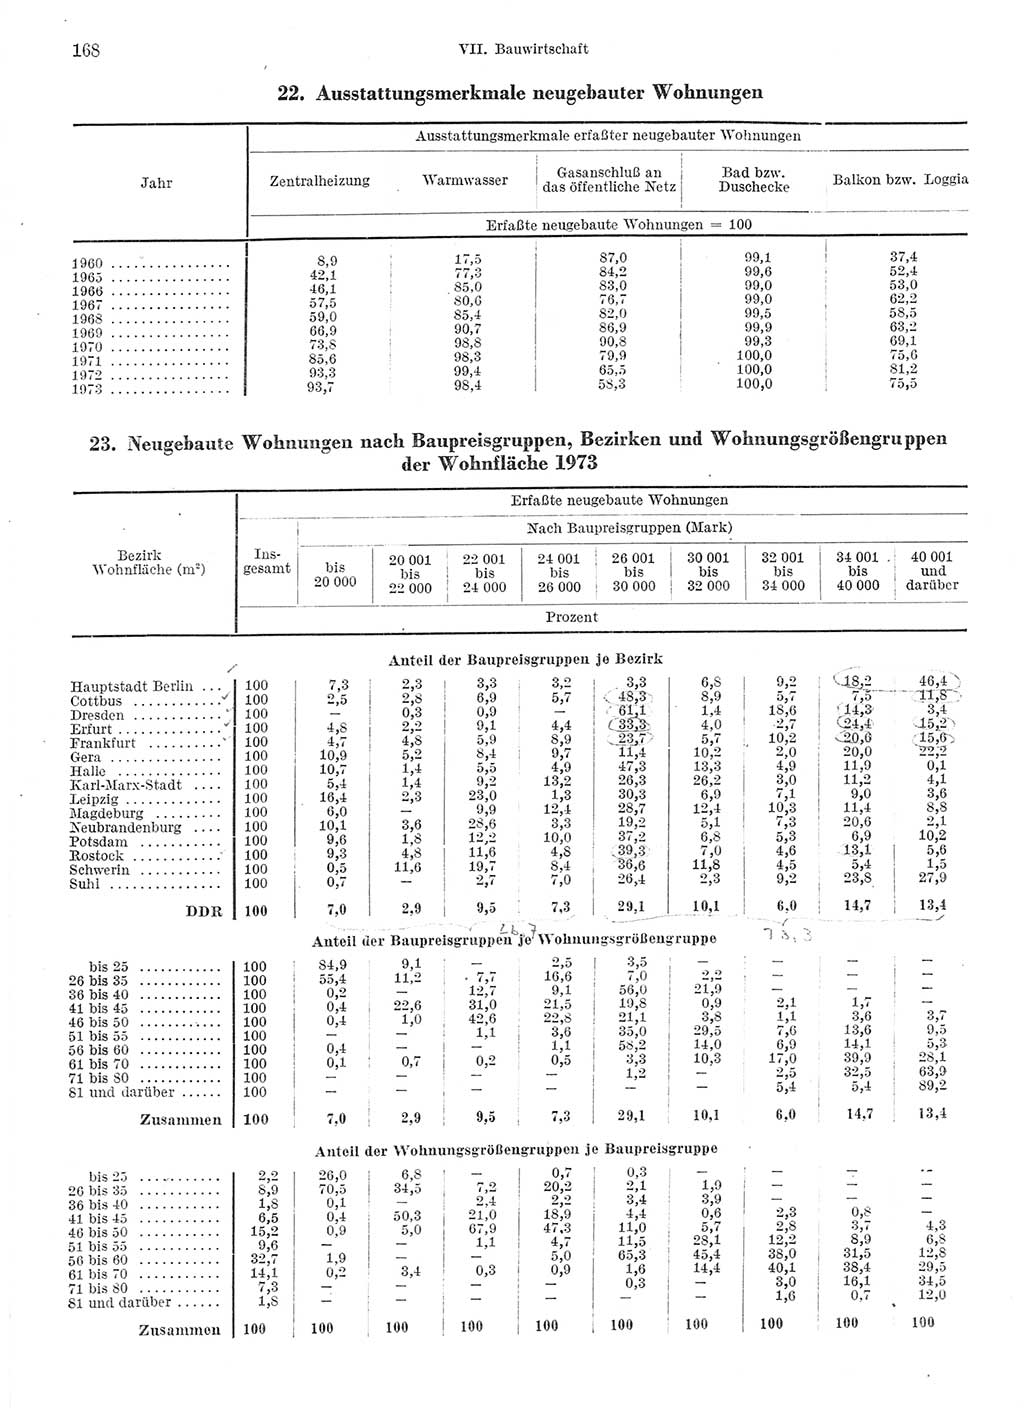 Statistisches Jahrbuch der Deutschen Demokratischen Republik (DDR) 1974, Seite 168 (Stat. Jb. DDR 1974, S. 168)